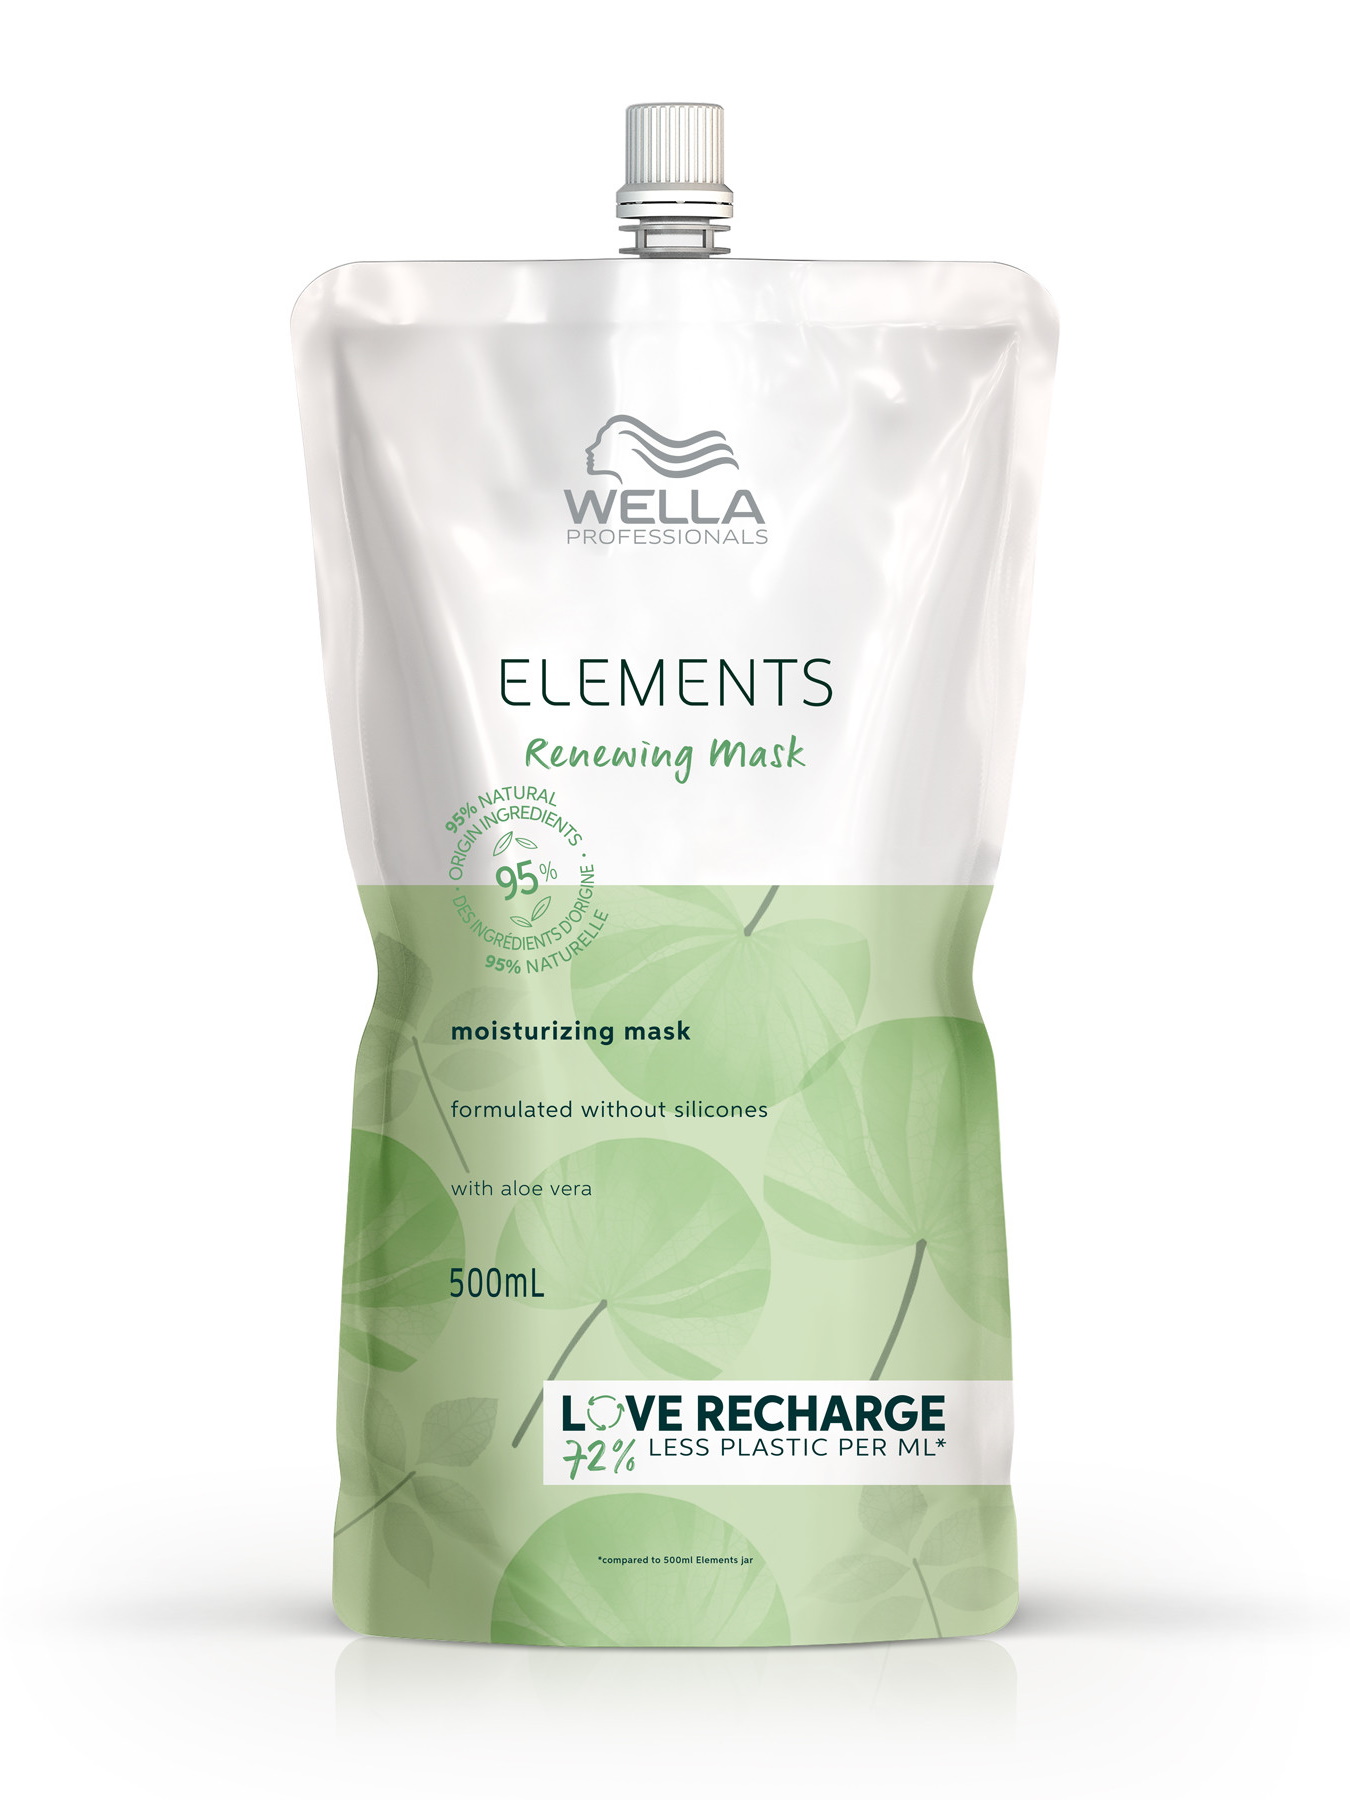 Маска ELEMENTS RENEWING для увлажнения волос Wella Professionals обновляющая 500 мл трехшаговая обновляющая программа премьер